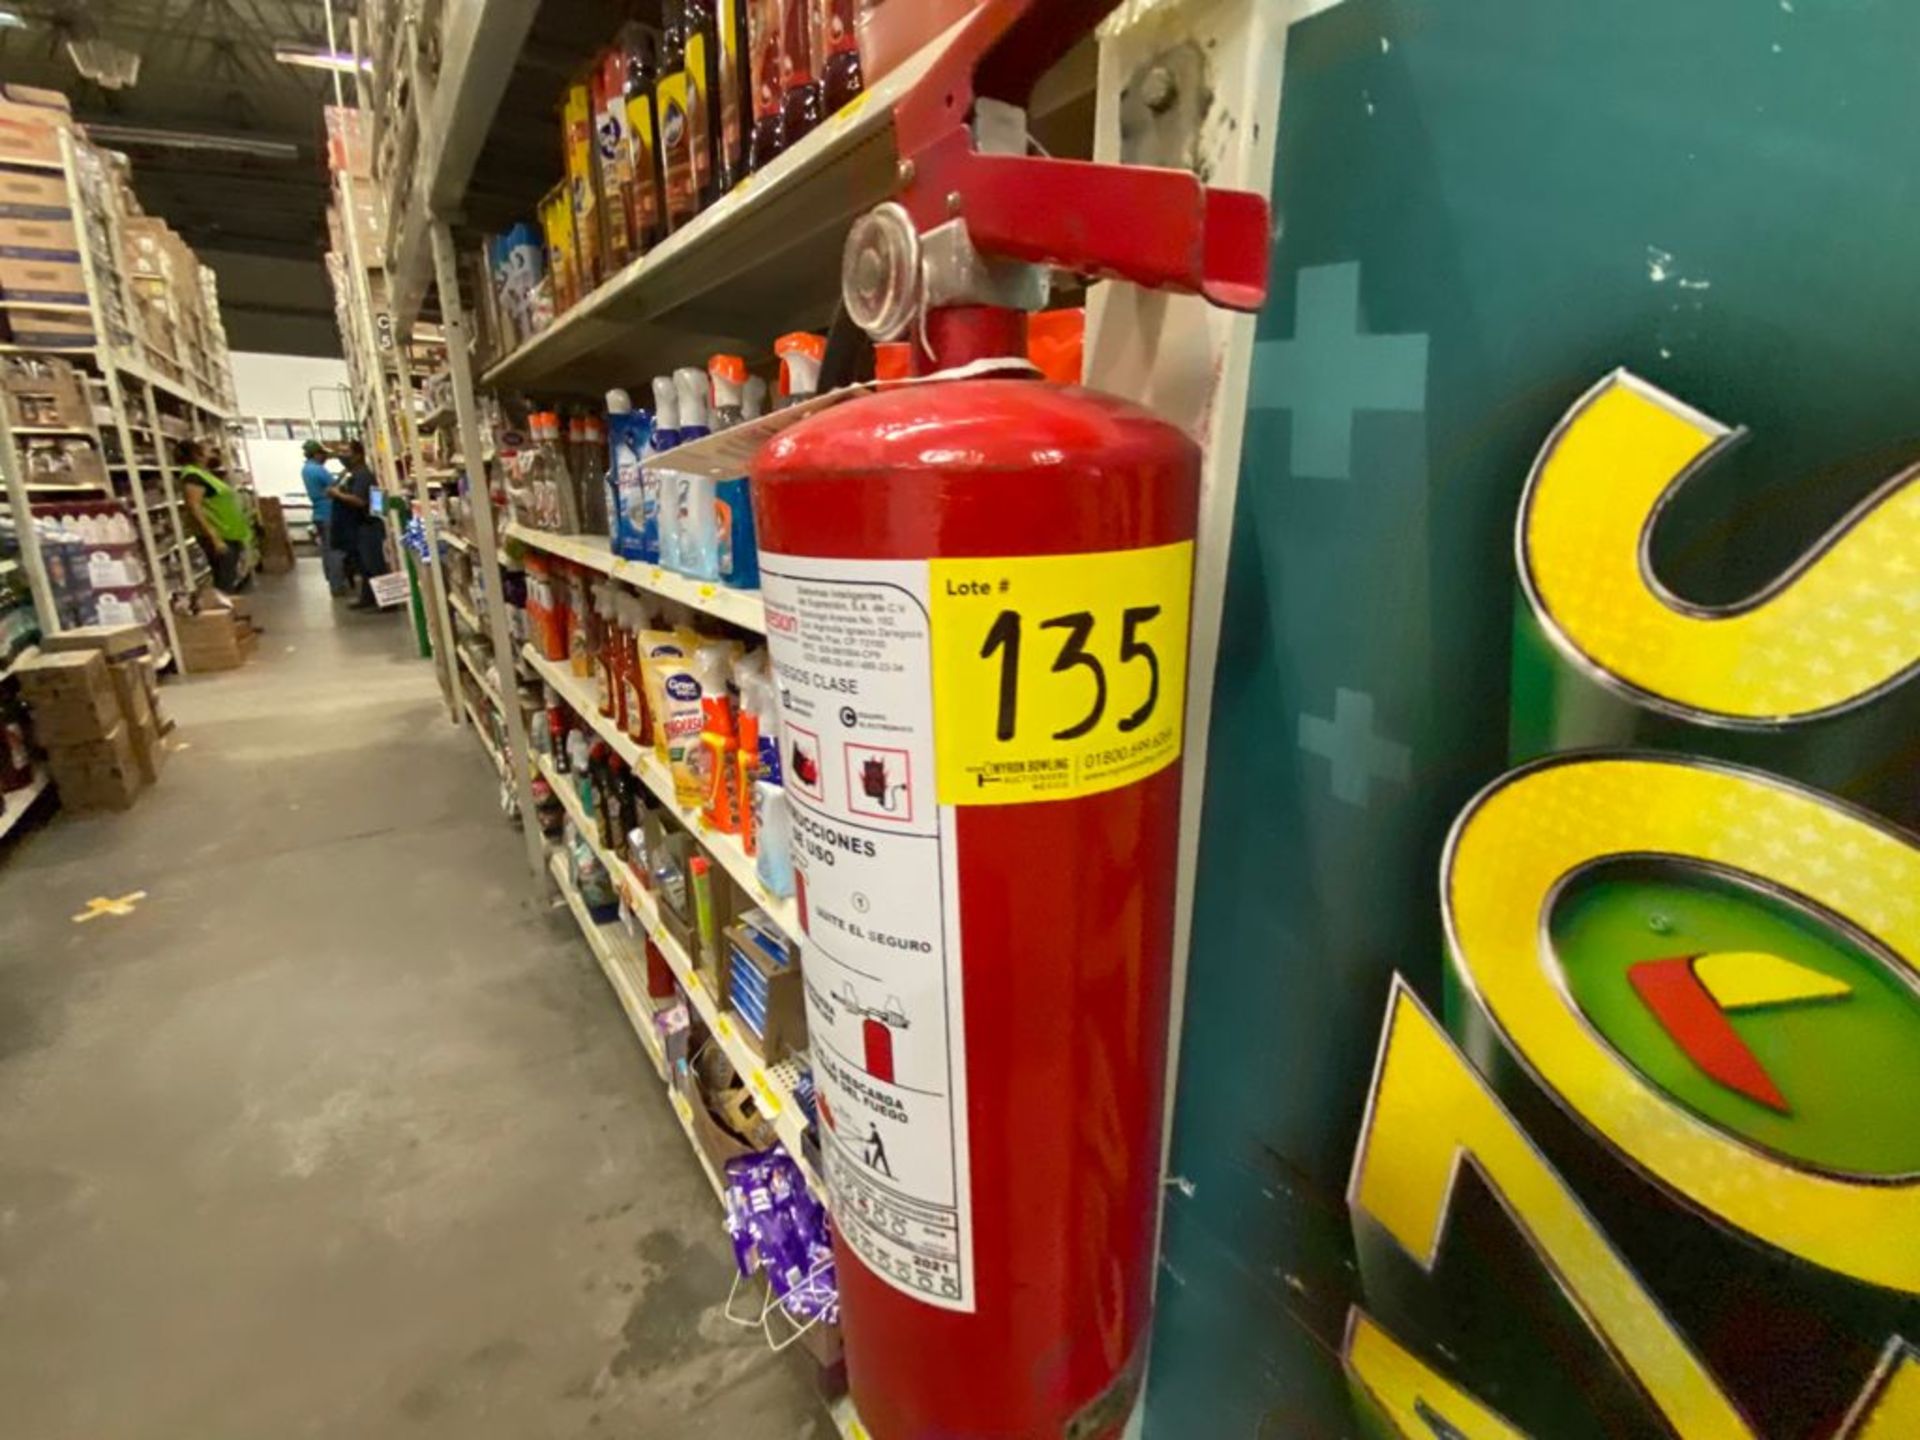 Lote de 21 Extintores distribuidos en toda la tienda - Image 27 of 56